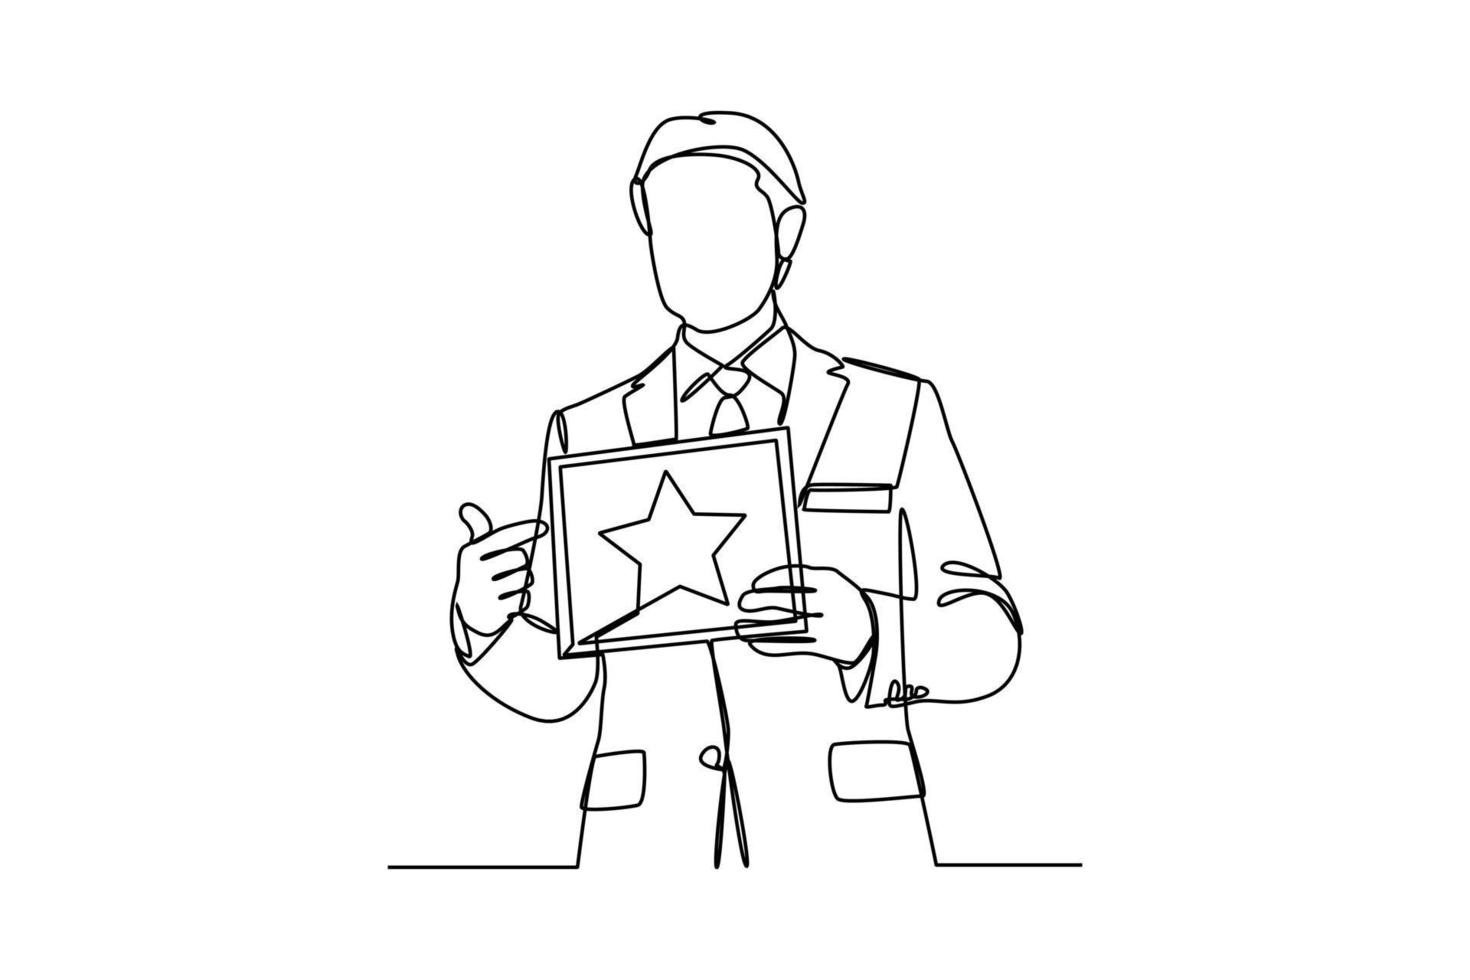 single een lijn tekening mannetje medewerkers te ontvangen certificaten van waardering. werknemer waardering dag concept. doorlopend lijn tekening ontwerp grafisch vector illustratie.